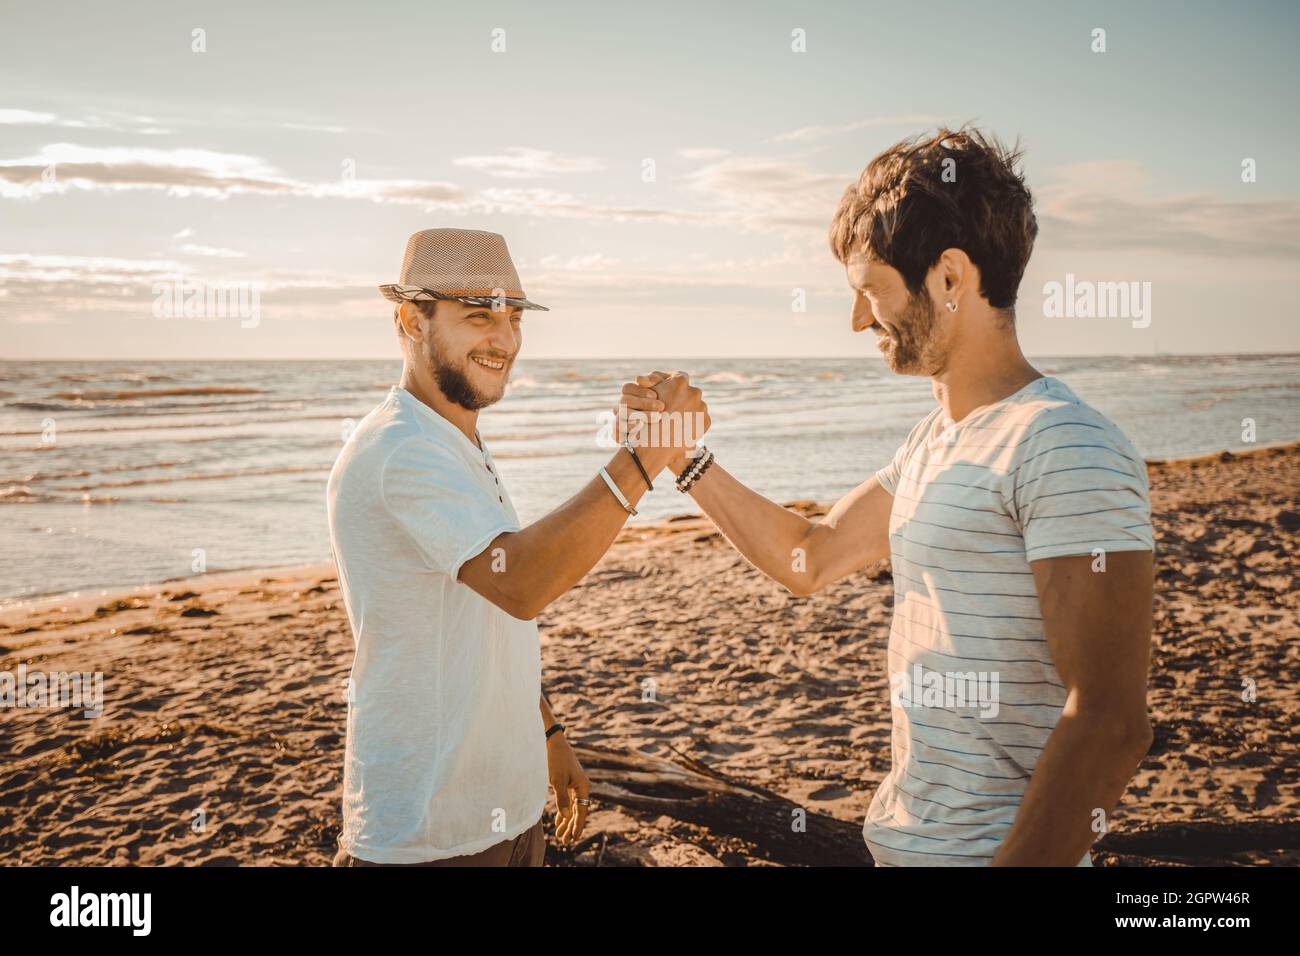 Ritratto di due ragazzi sorridenti sulla spiaggia che agitano le mani - i migliori amici felici si salutano con una stretta di mano Foto Stock